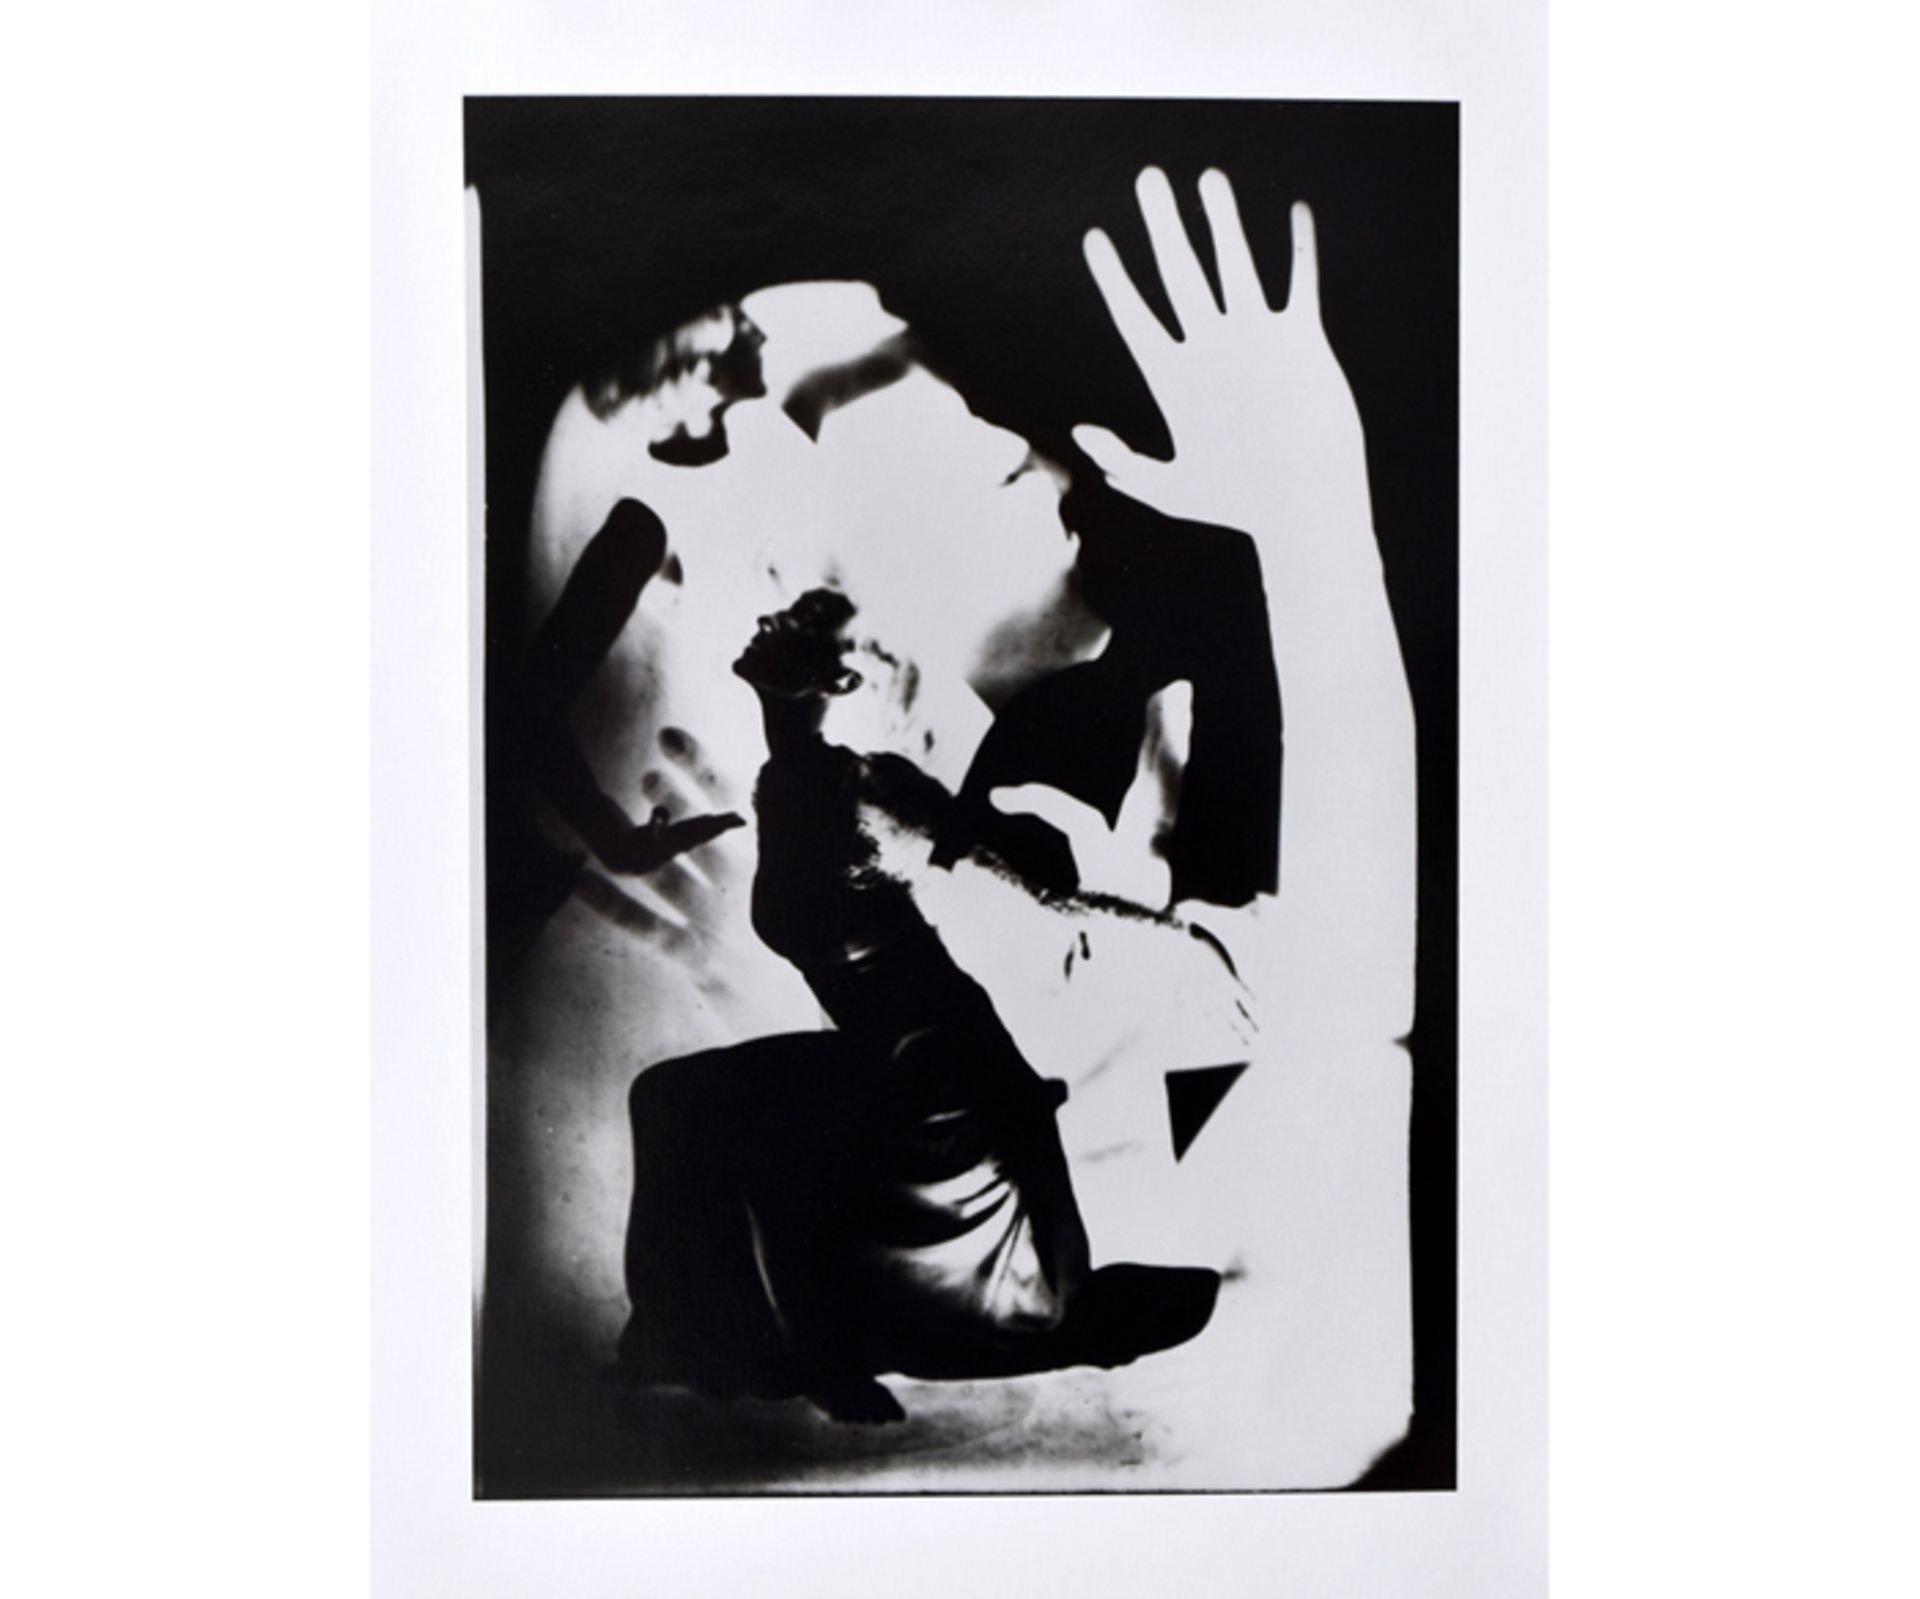 Edmund KESTING, 1892 Dresden - 1970 Birkenwerder; Fotografie "Dore Hoyer", um 1937; 22,5 cm x 32